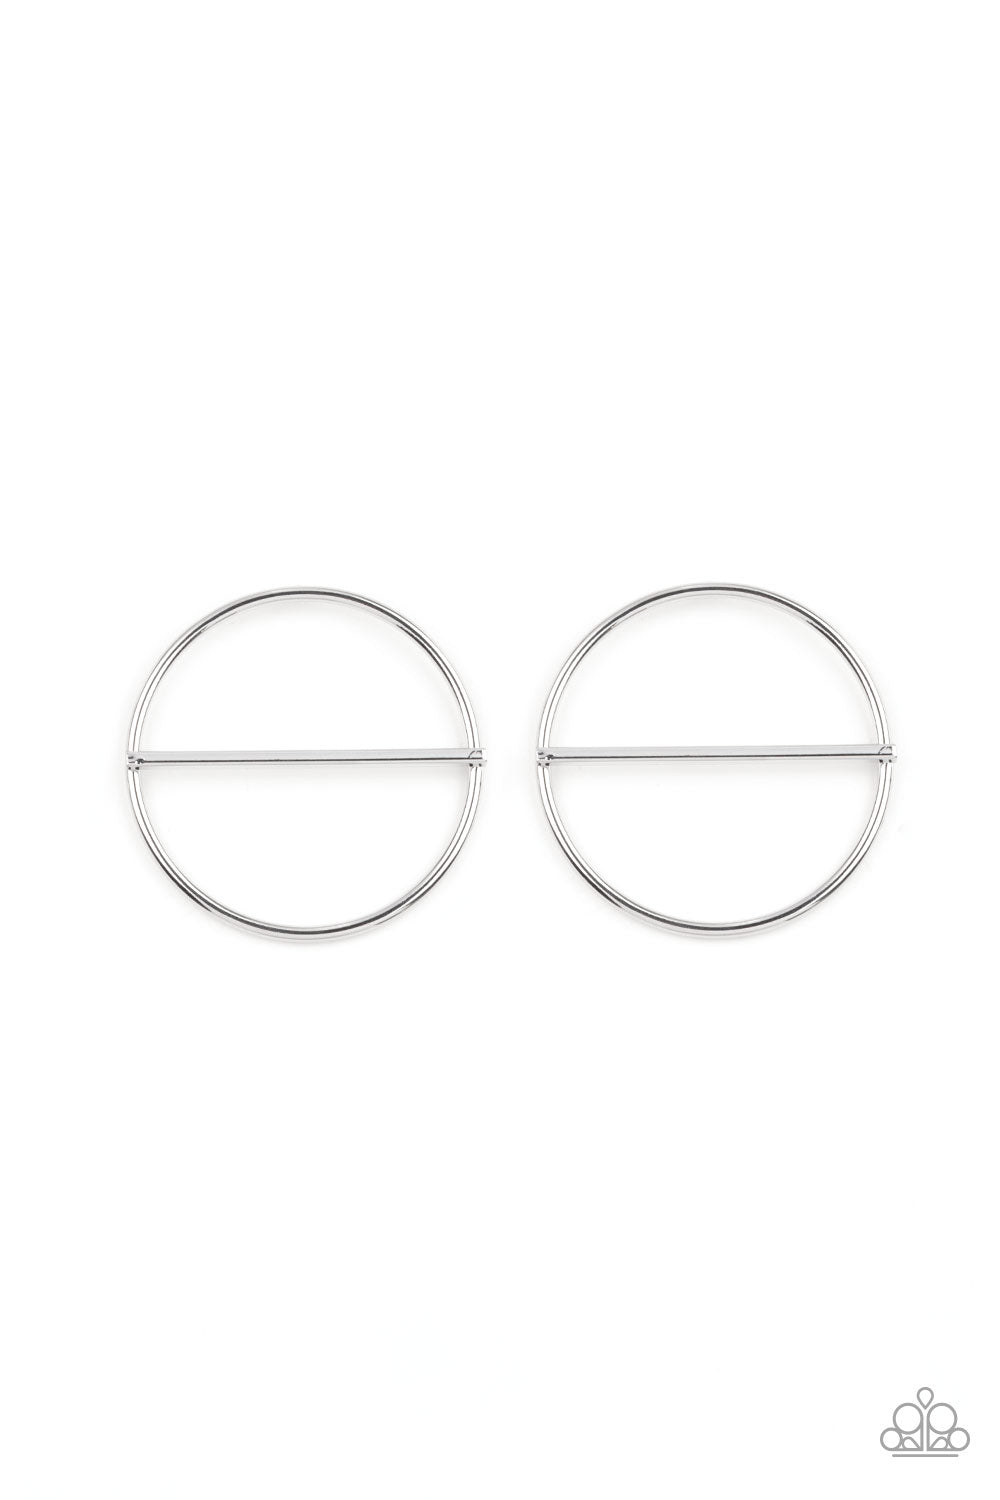 Paparazzi - Dynamic Diameter - Silver Earrings